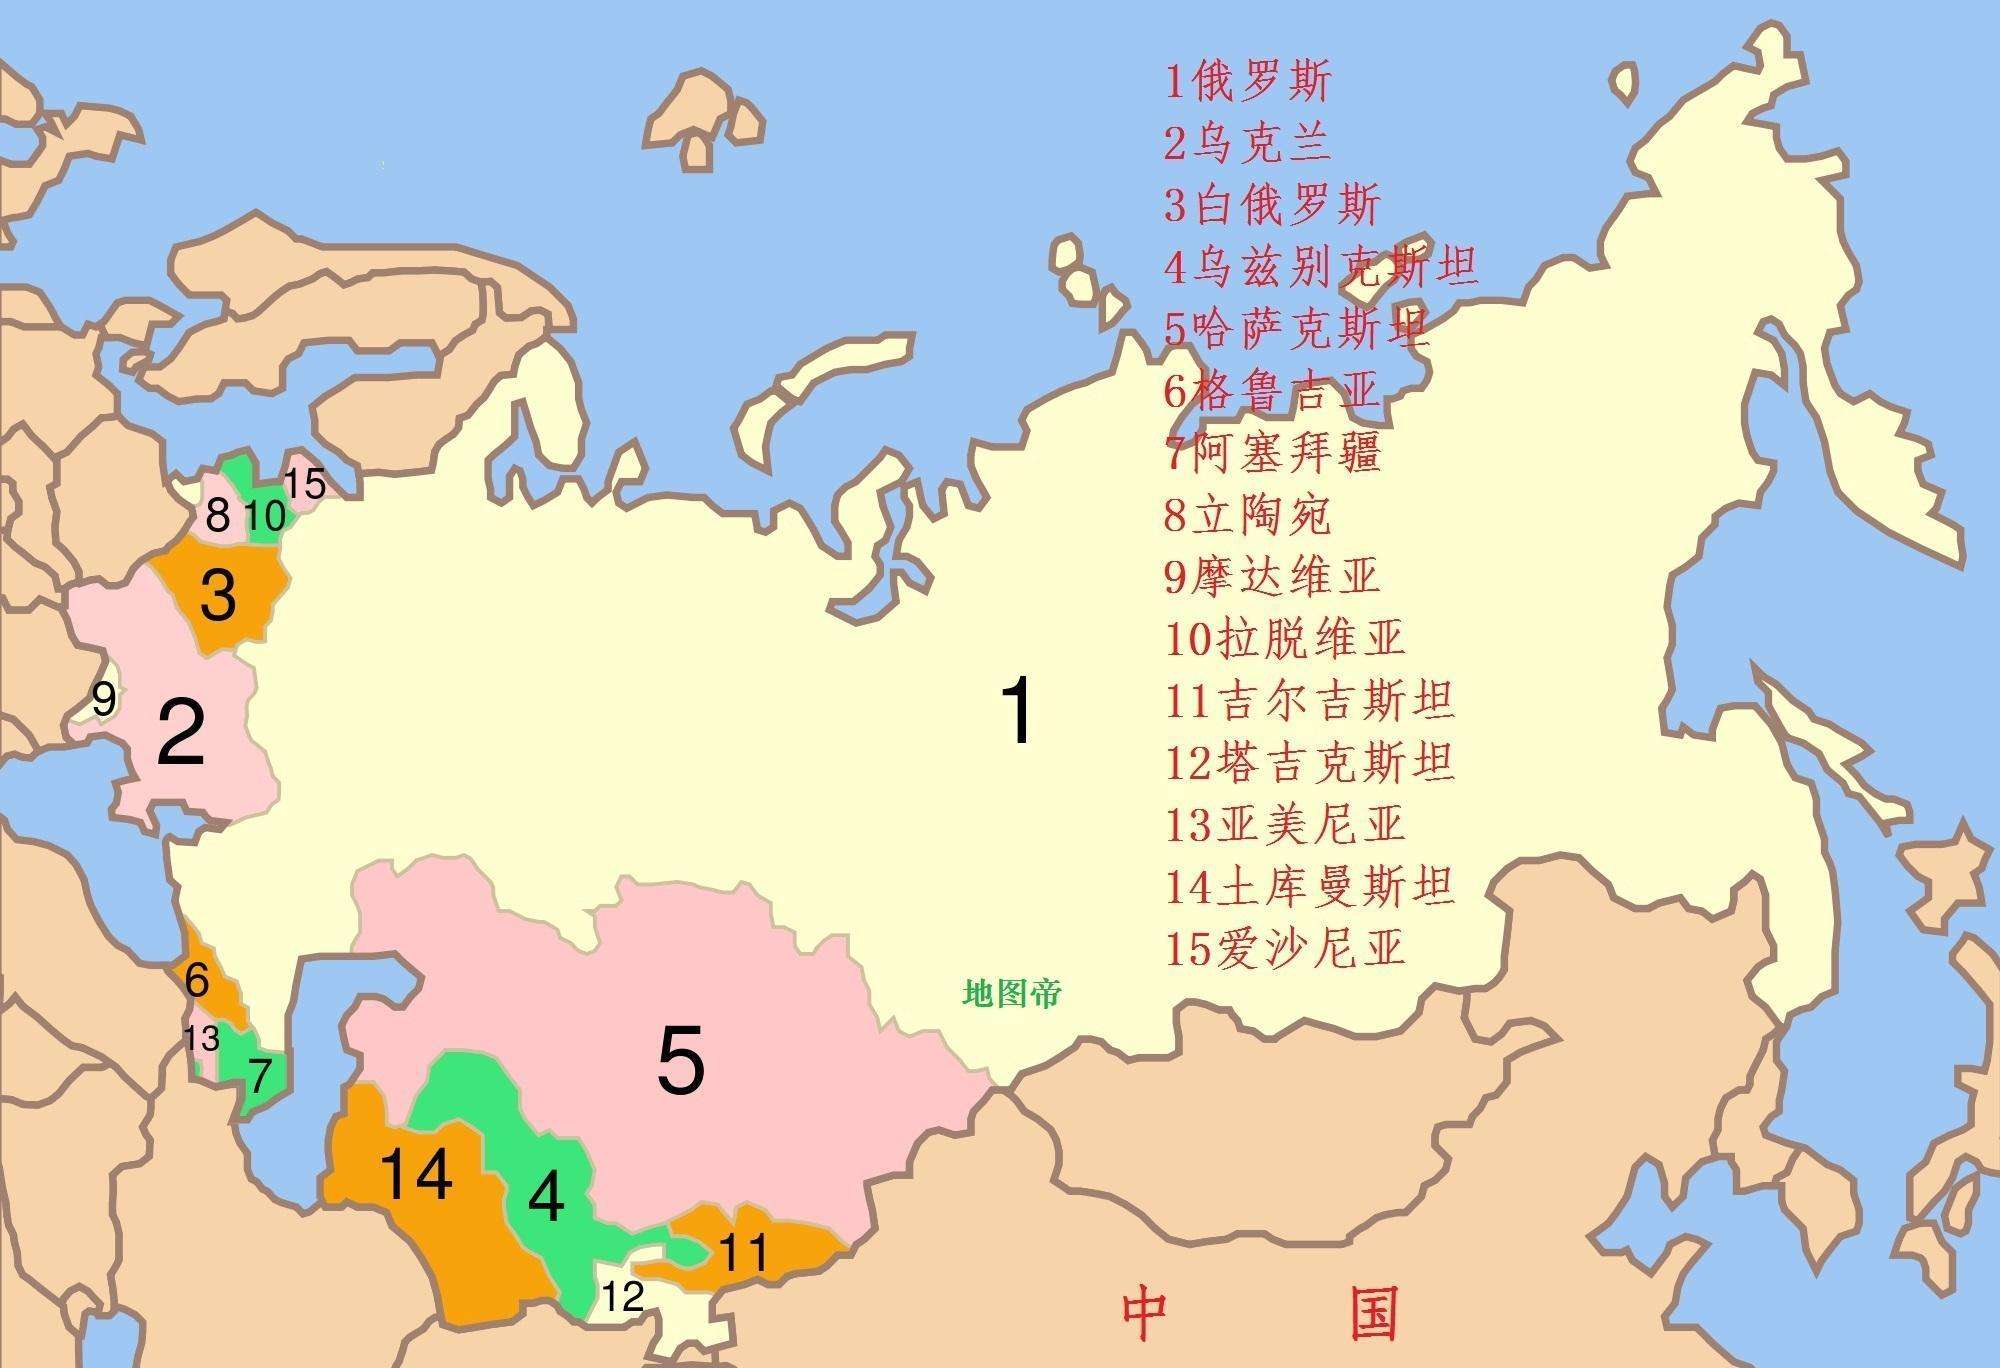 冬季攻势：南京国民政府主动发起的战略性进攻战役，把日军打懵了 - 知乎